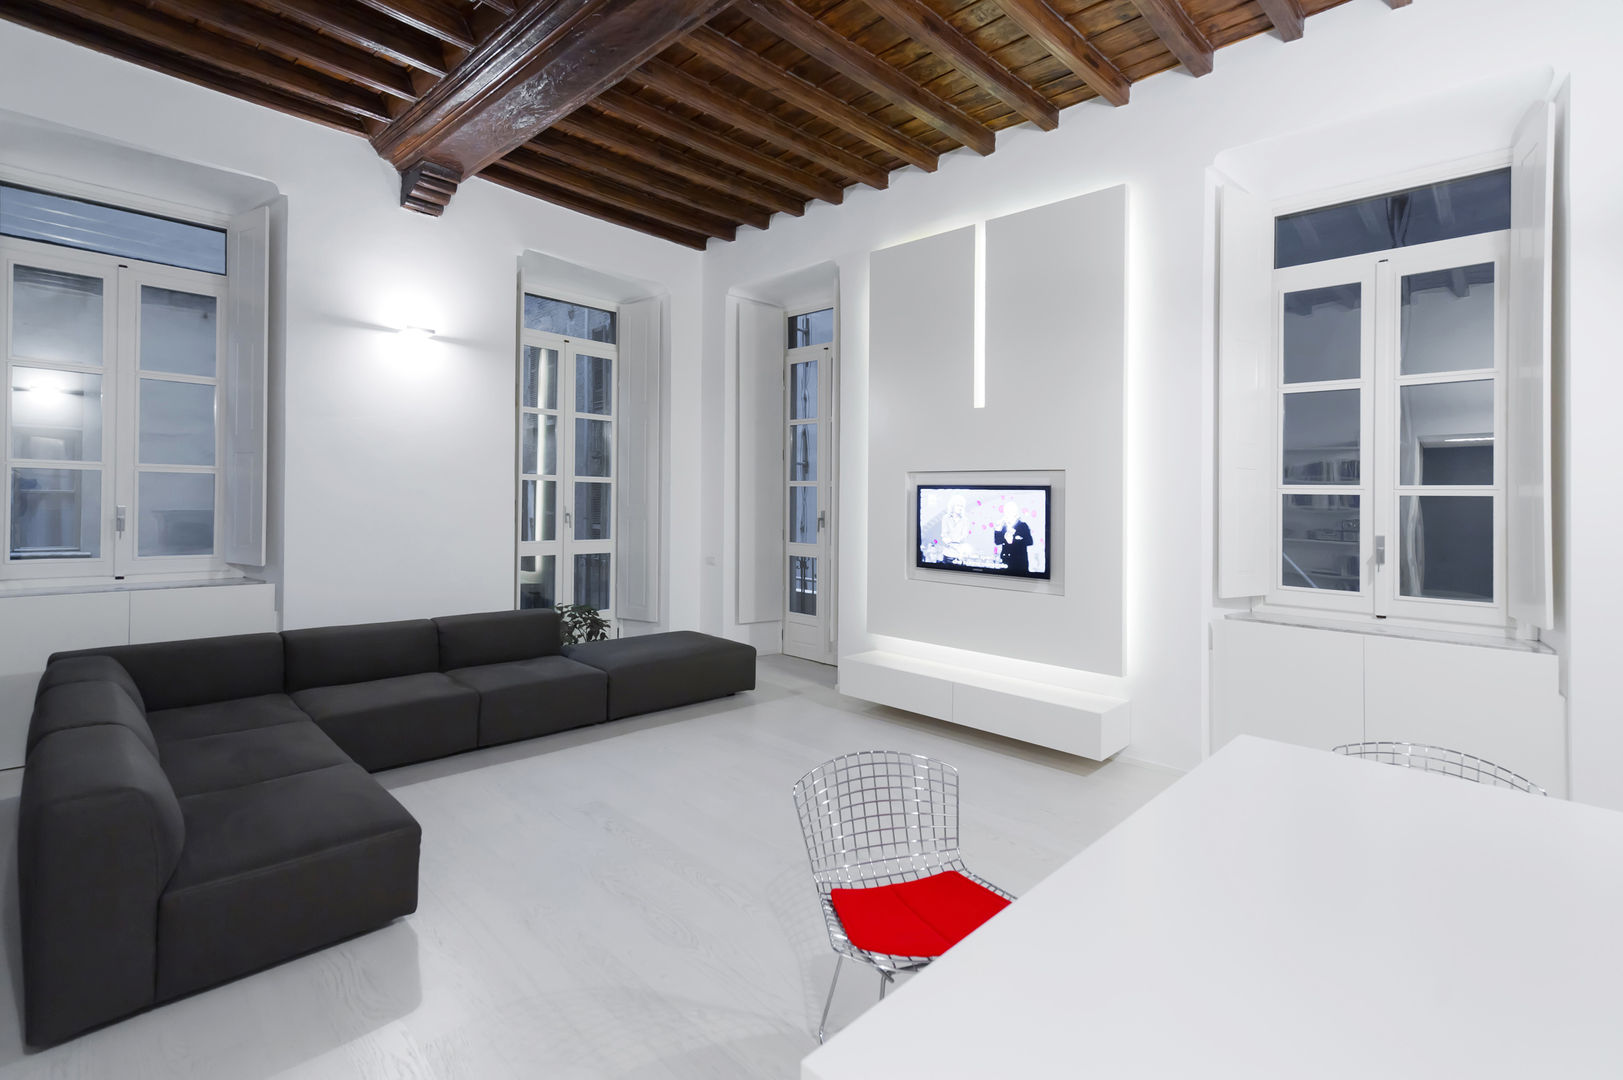 U:BA house, Comoglio Architetti Comoglio Architetti Salas y Recibidores: Ideas, diseños y decoración